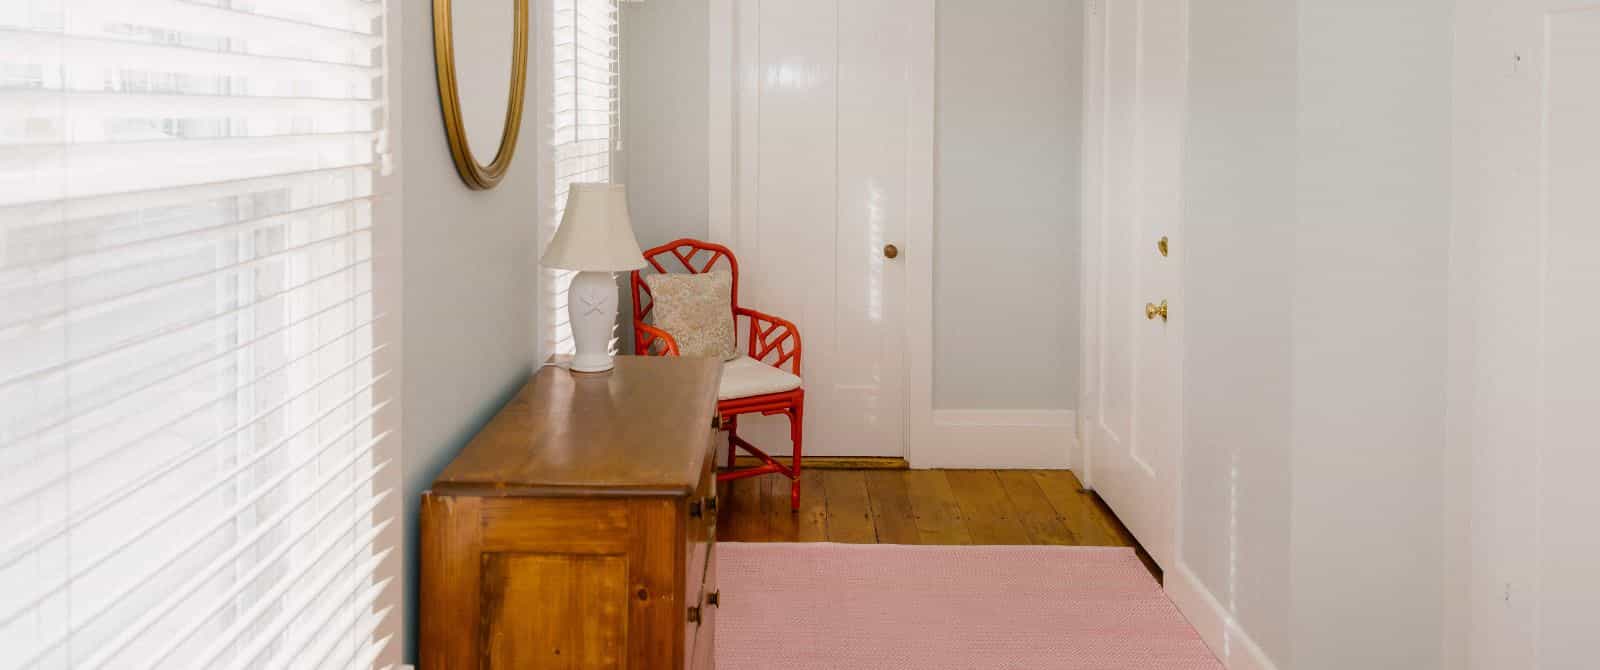 Hallway with light green walls, white trim, wooden flooring, dark wooden dresser, and orange chair